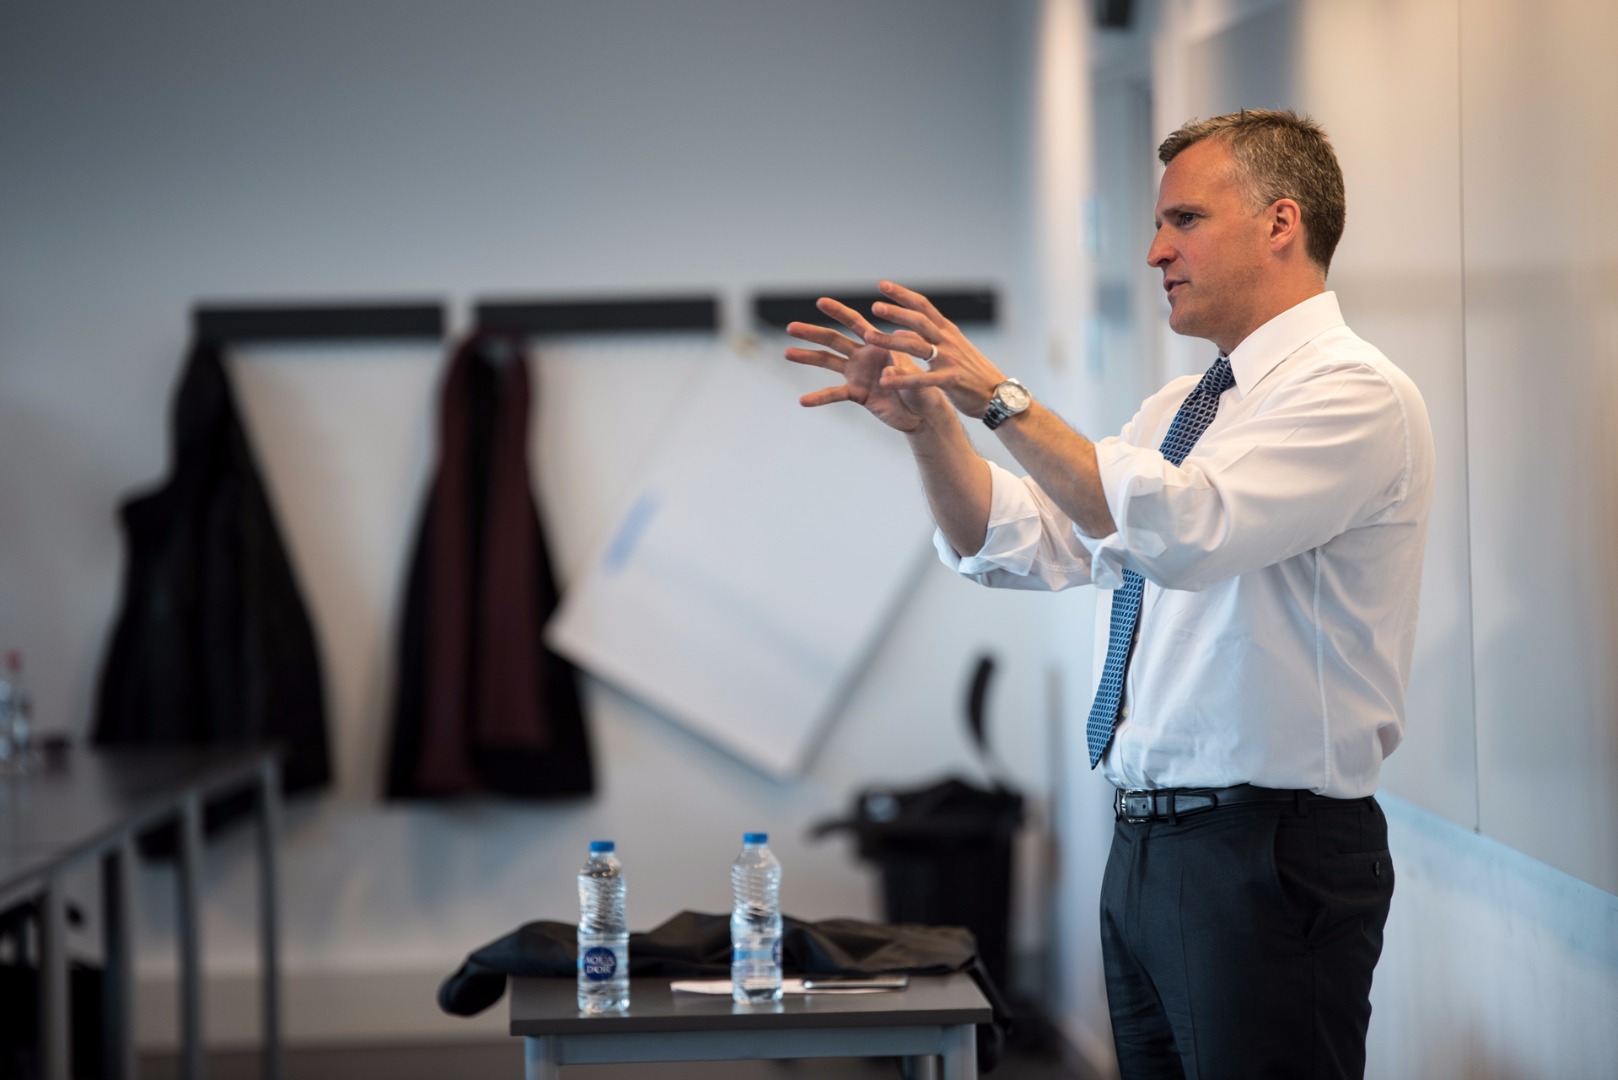 Rufus Gifford holder oplæg om branding i undervisninglokale på Cphbusiness i Lyngby til studerende fra Marketing Management